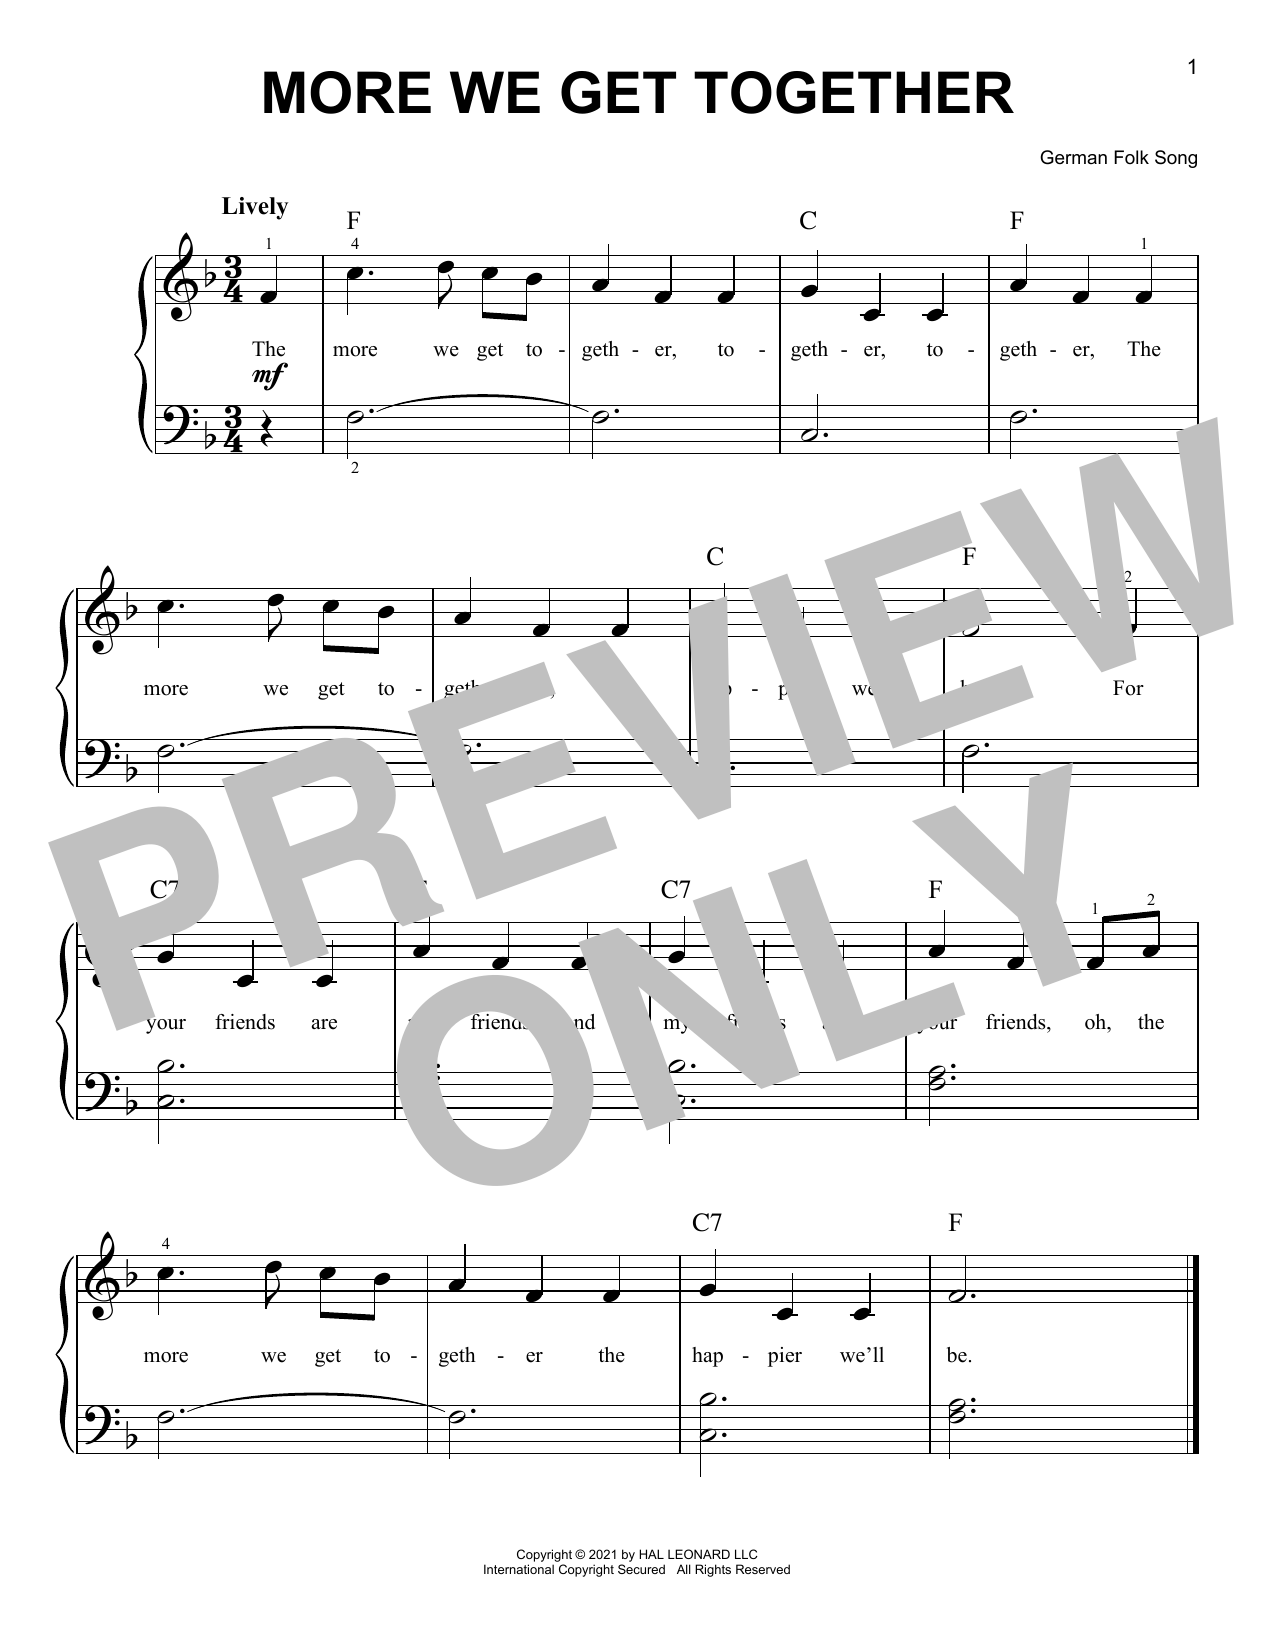 German Folk Song More We Get Together Sheet Music Notes & Chords for Ukulele - Download or Print PDF